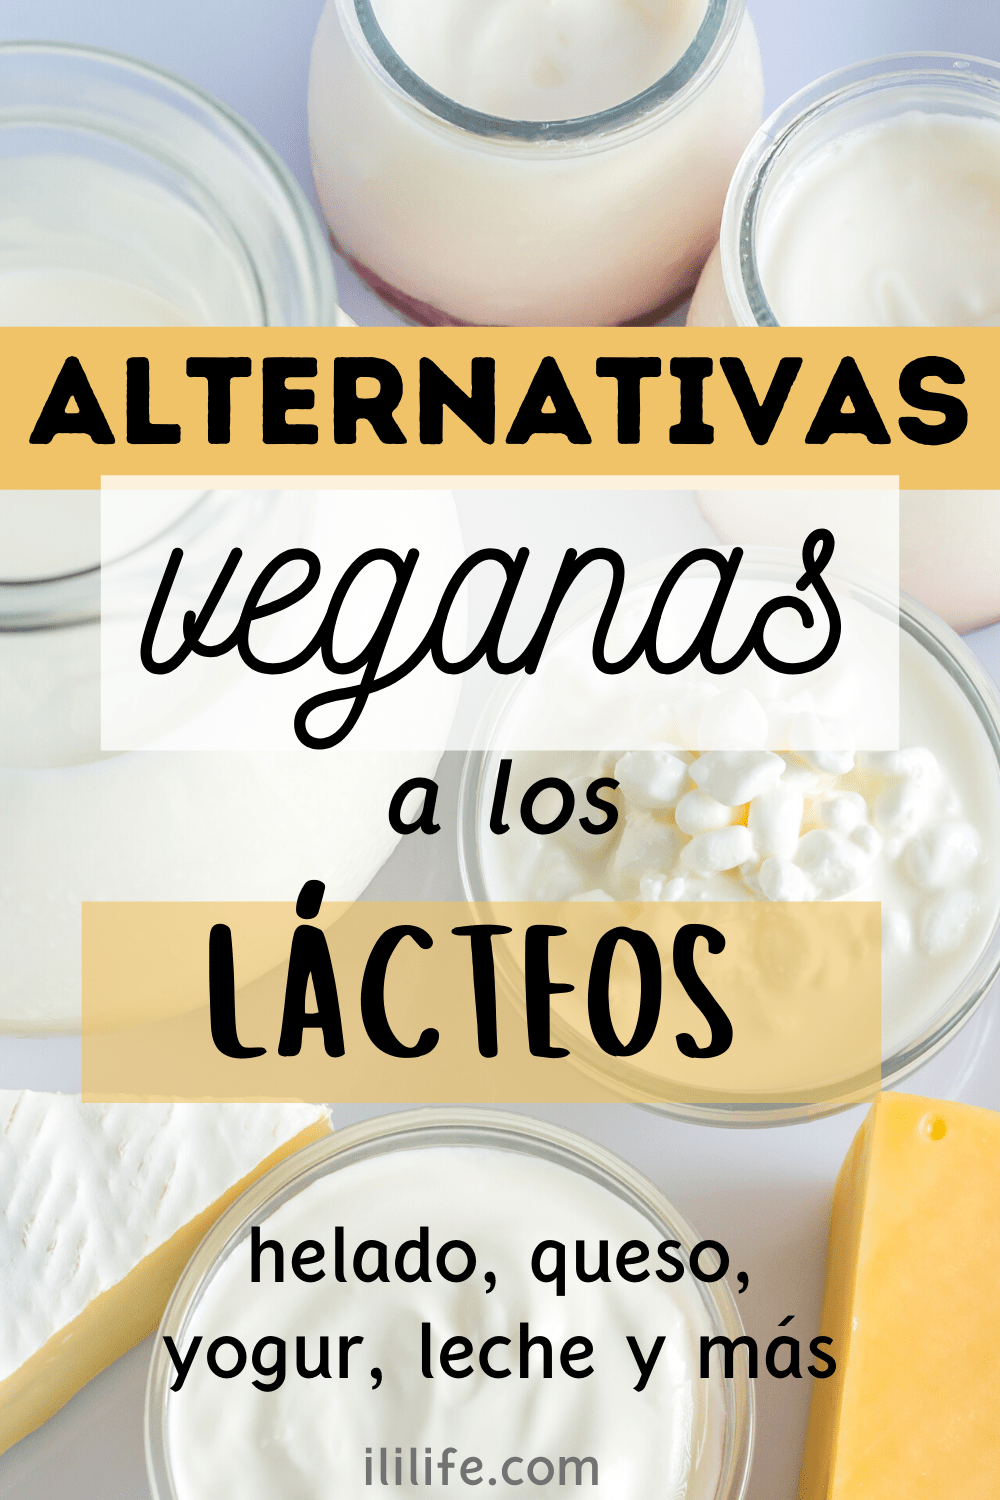 Alternativas veganas a los lácteos: leche, queso, helado, yogur, nata....